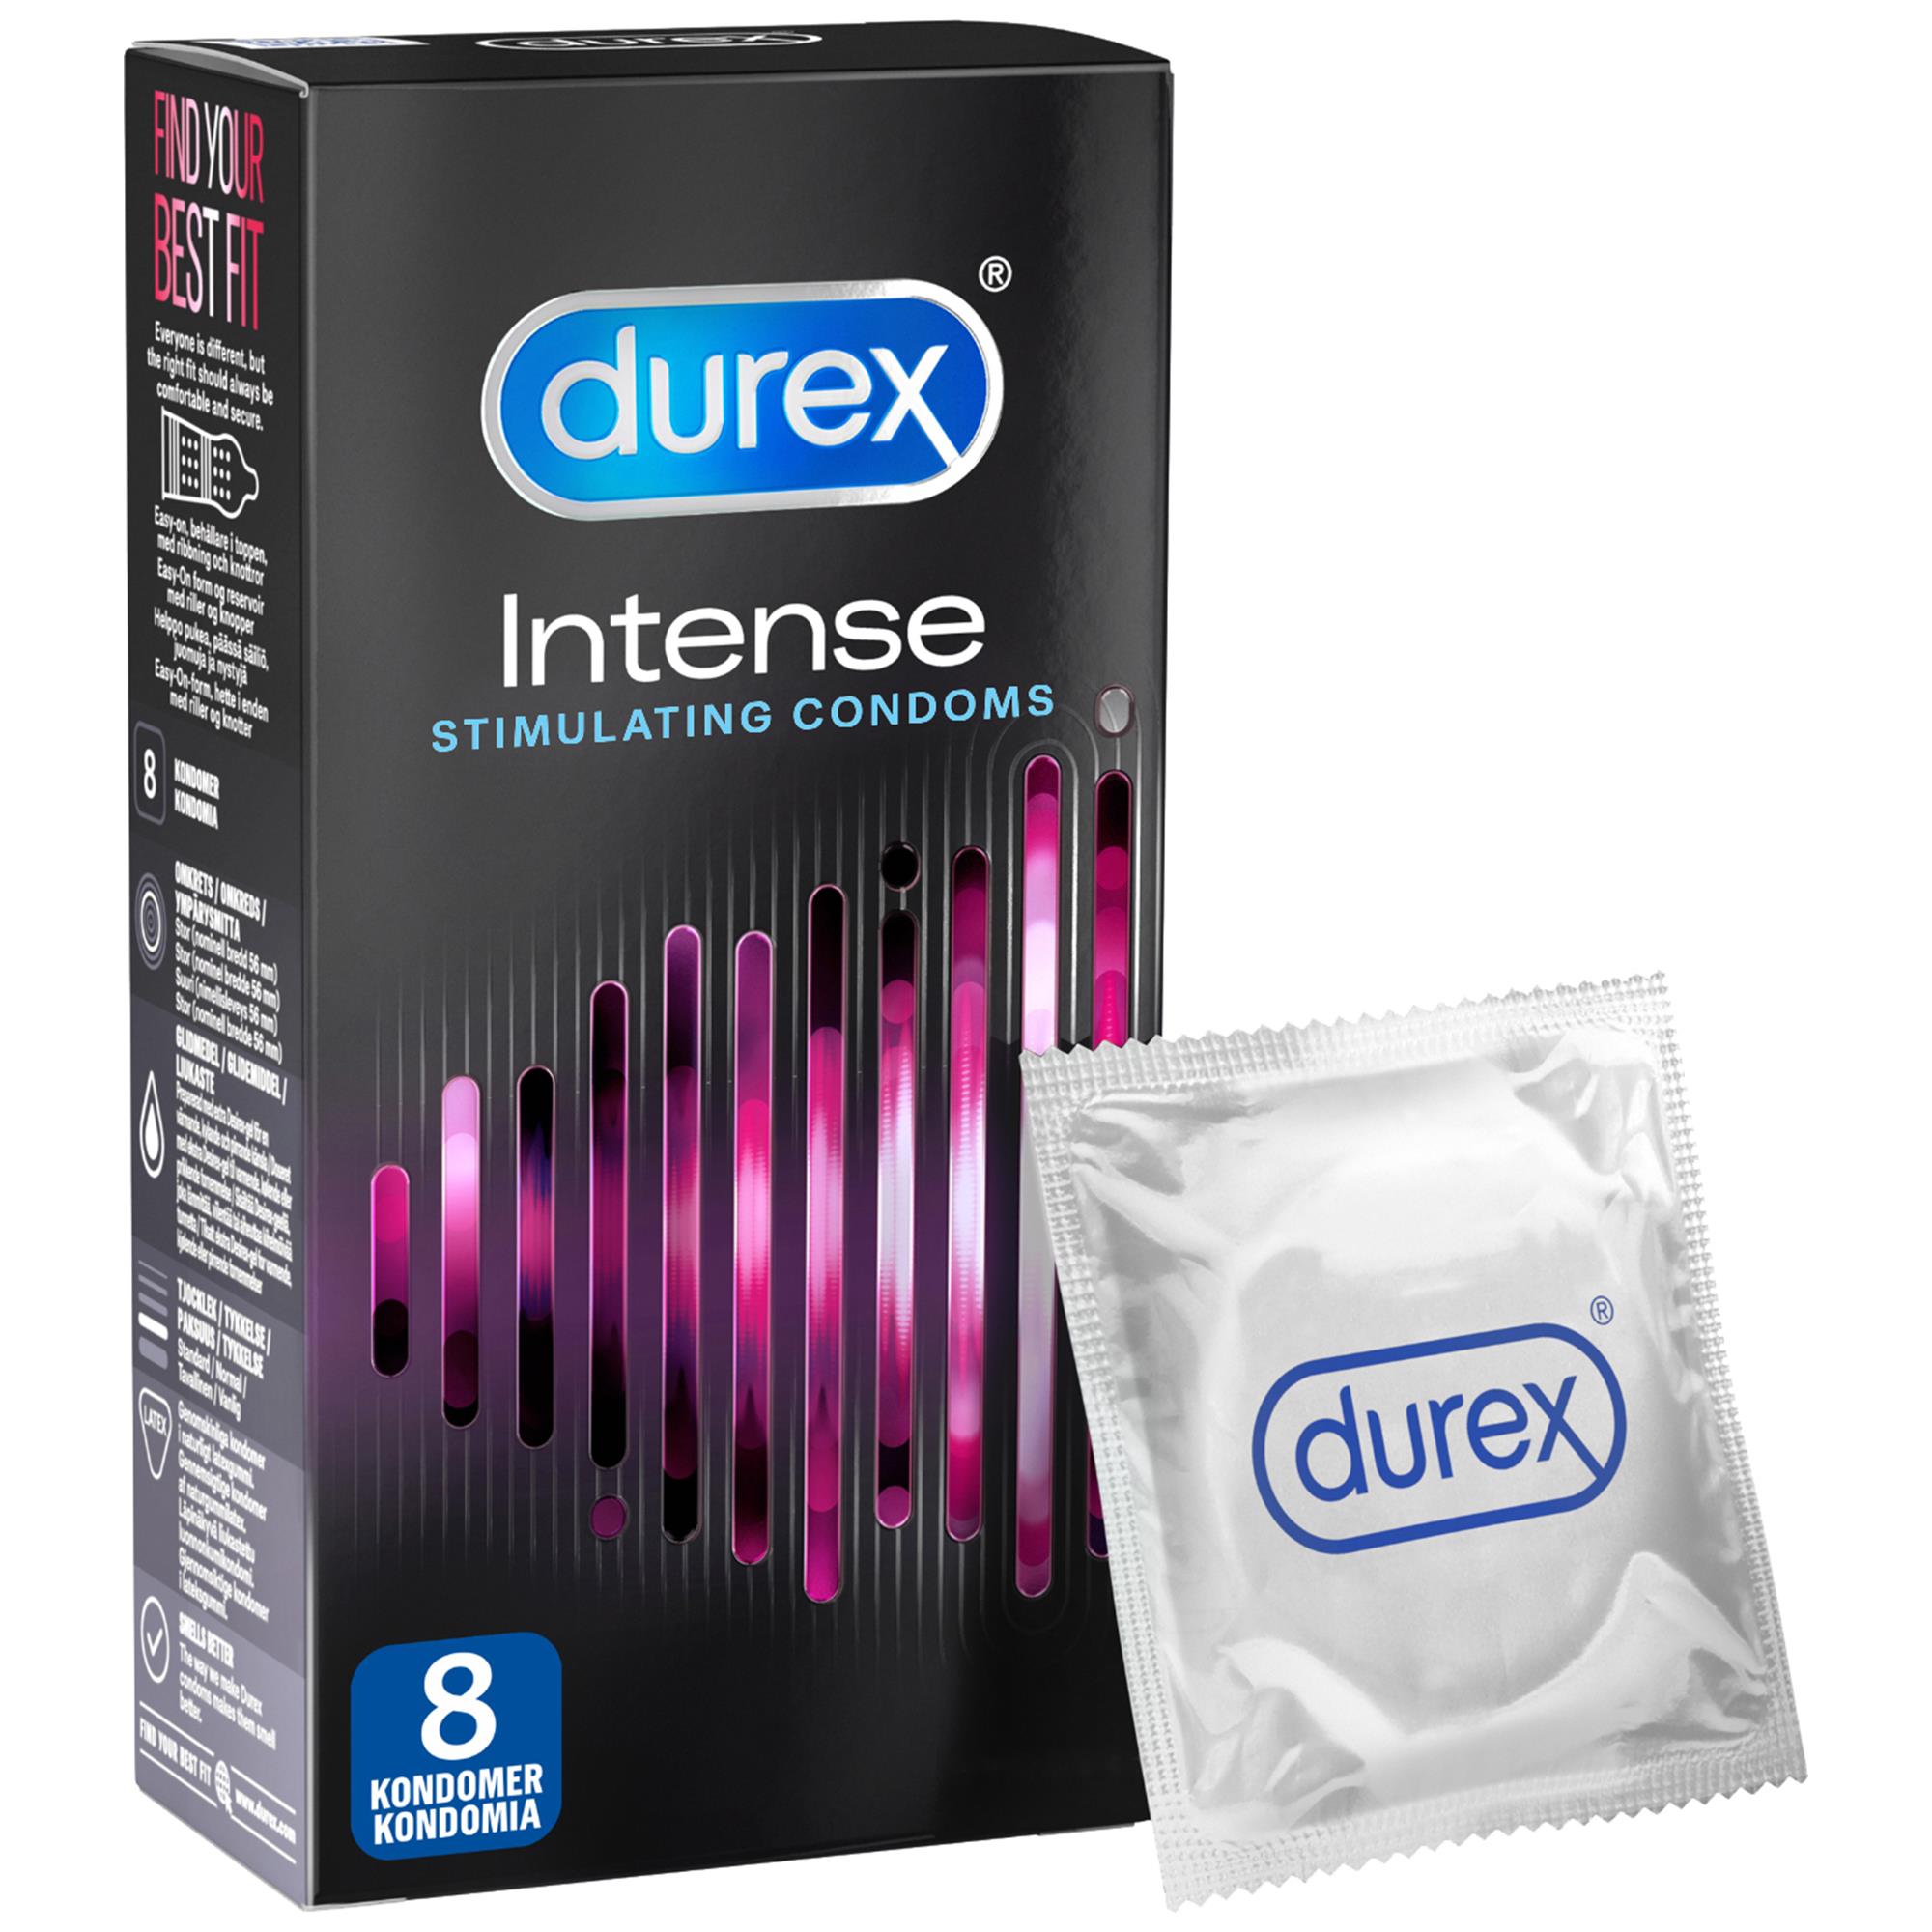 Durex Intense Kondom 8 st